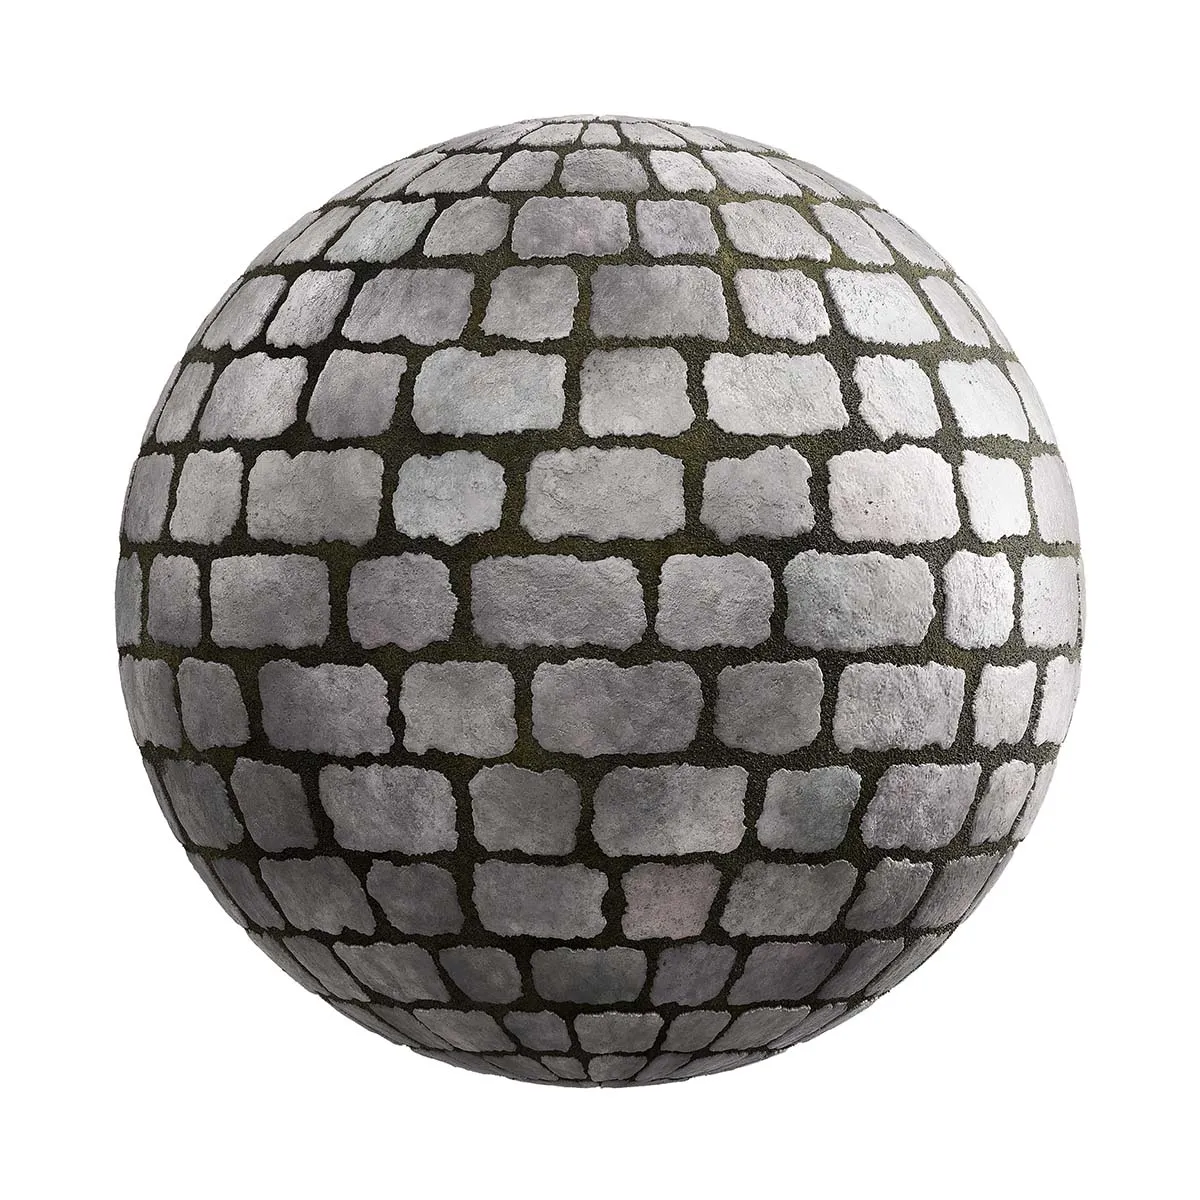 PBR Textures Volume 25 – Pavemetns – 4K – 8K – stone_pavement_25_43